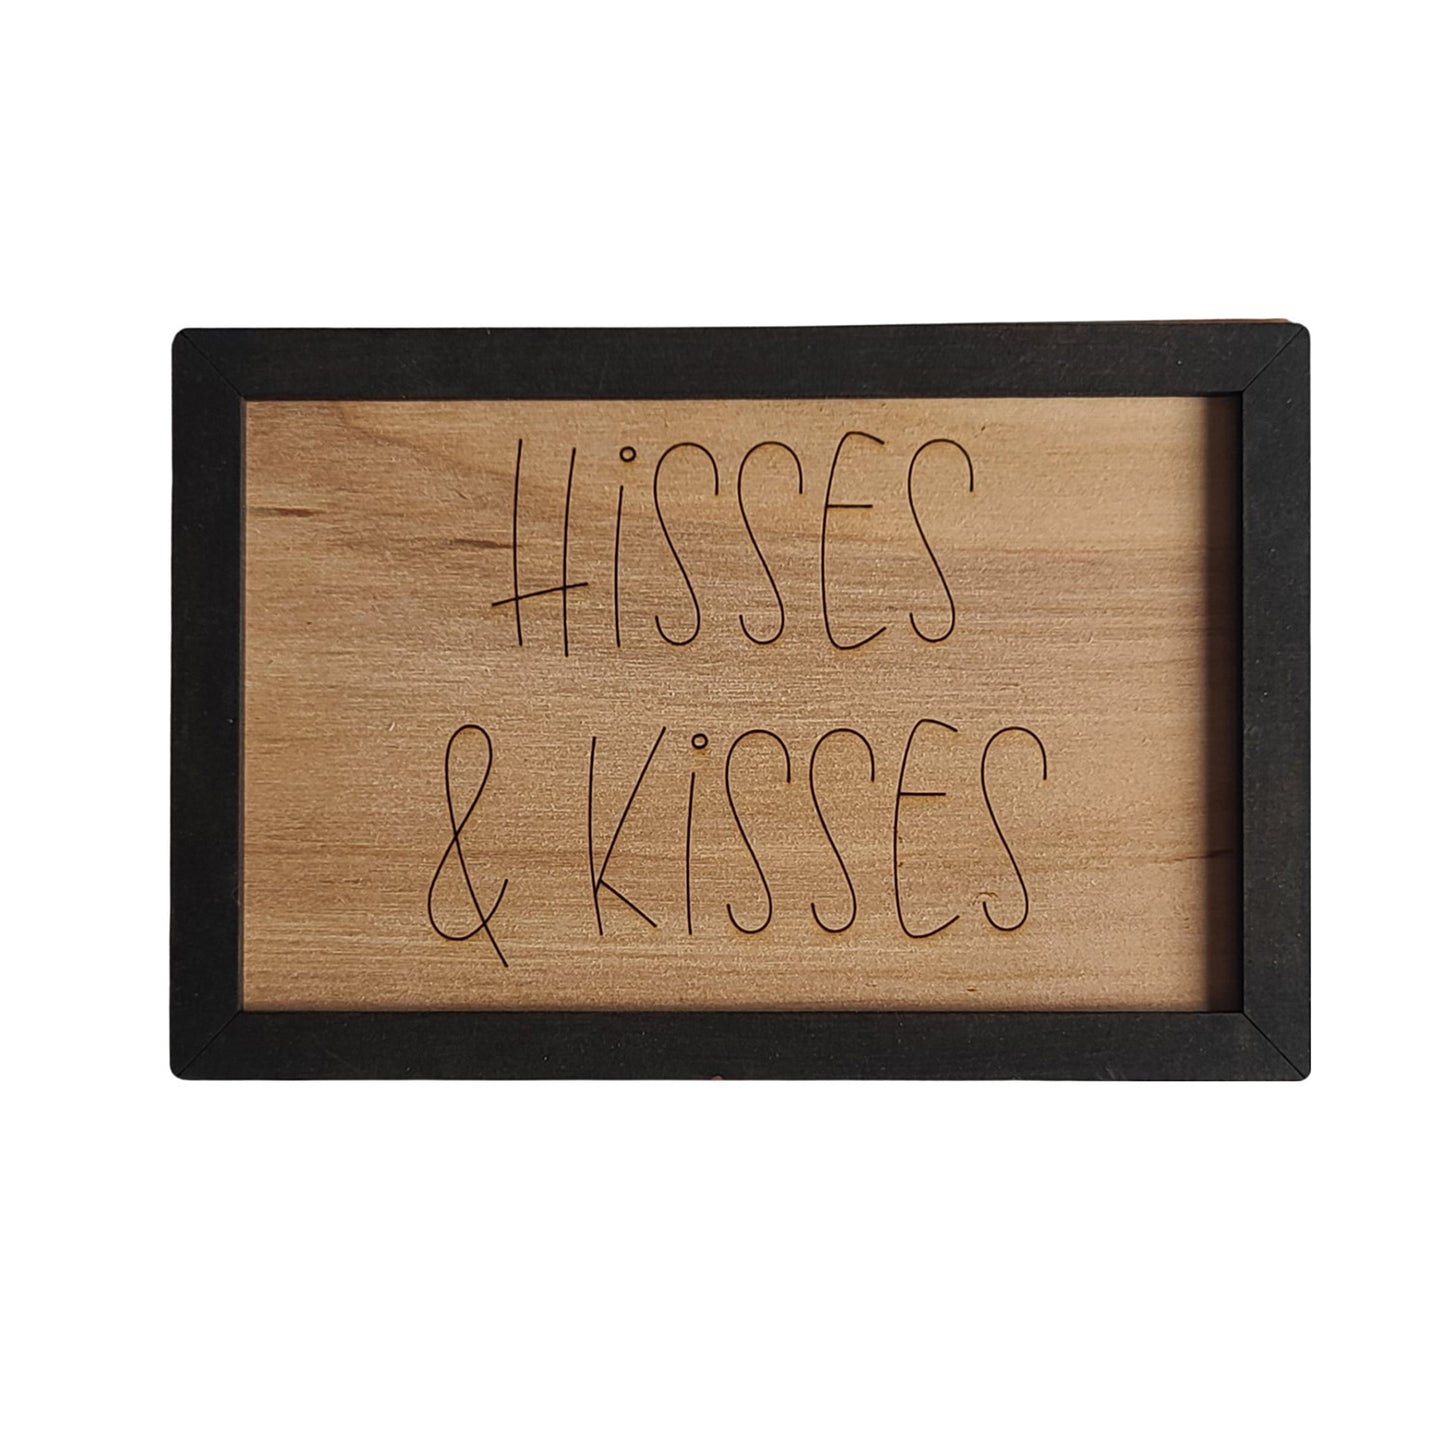 Hisses & Kisses - Cat Sign